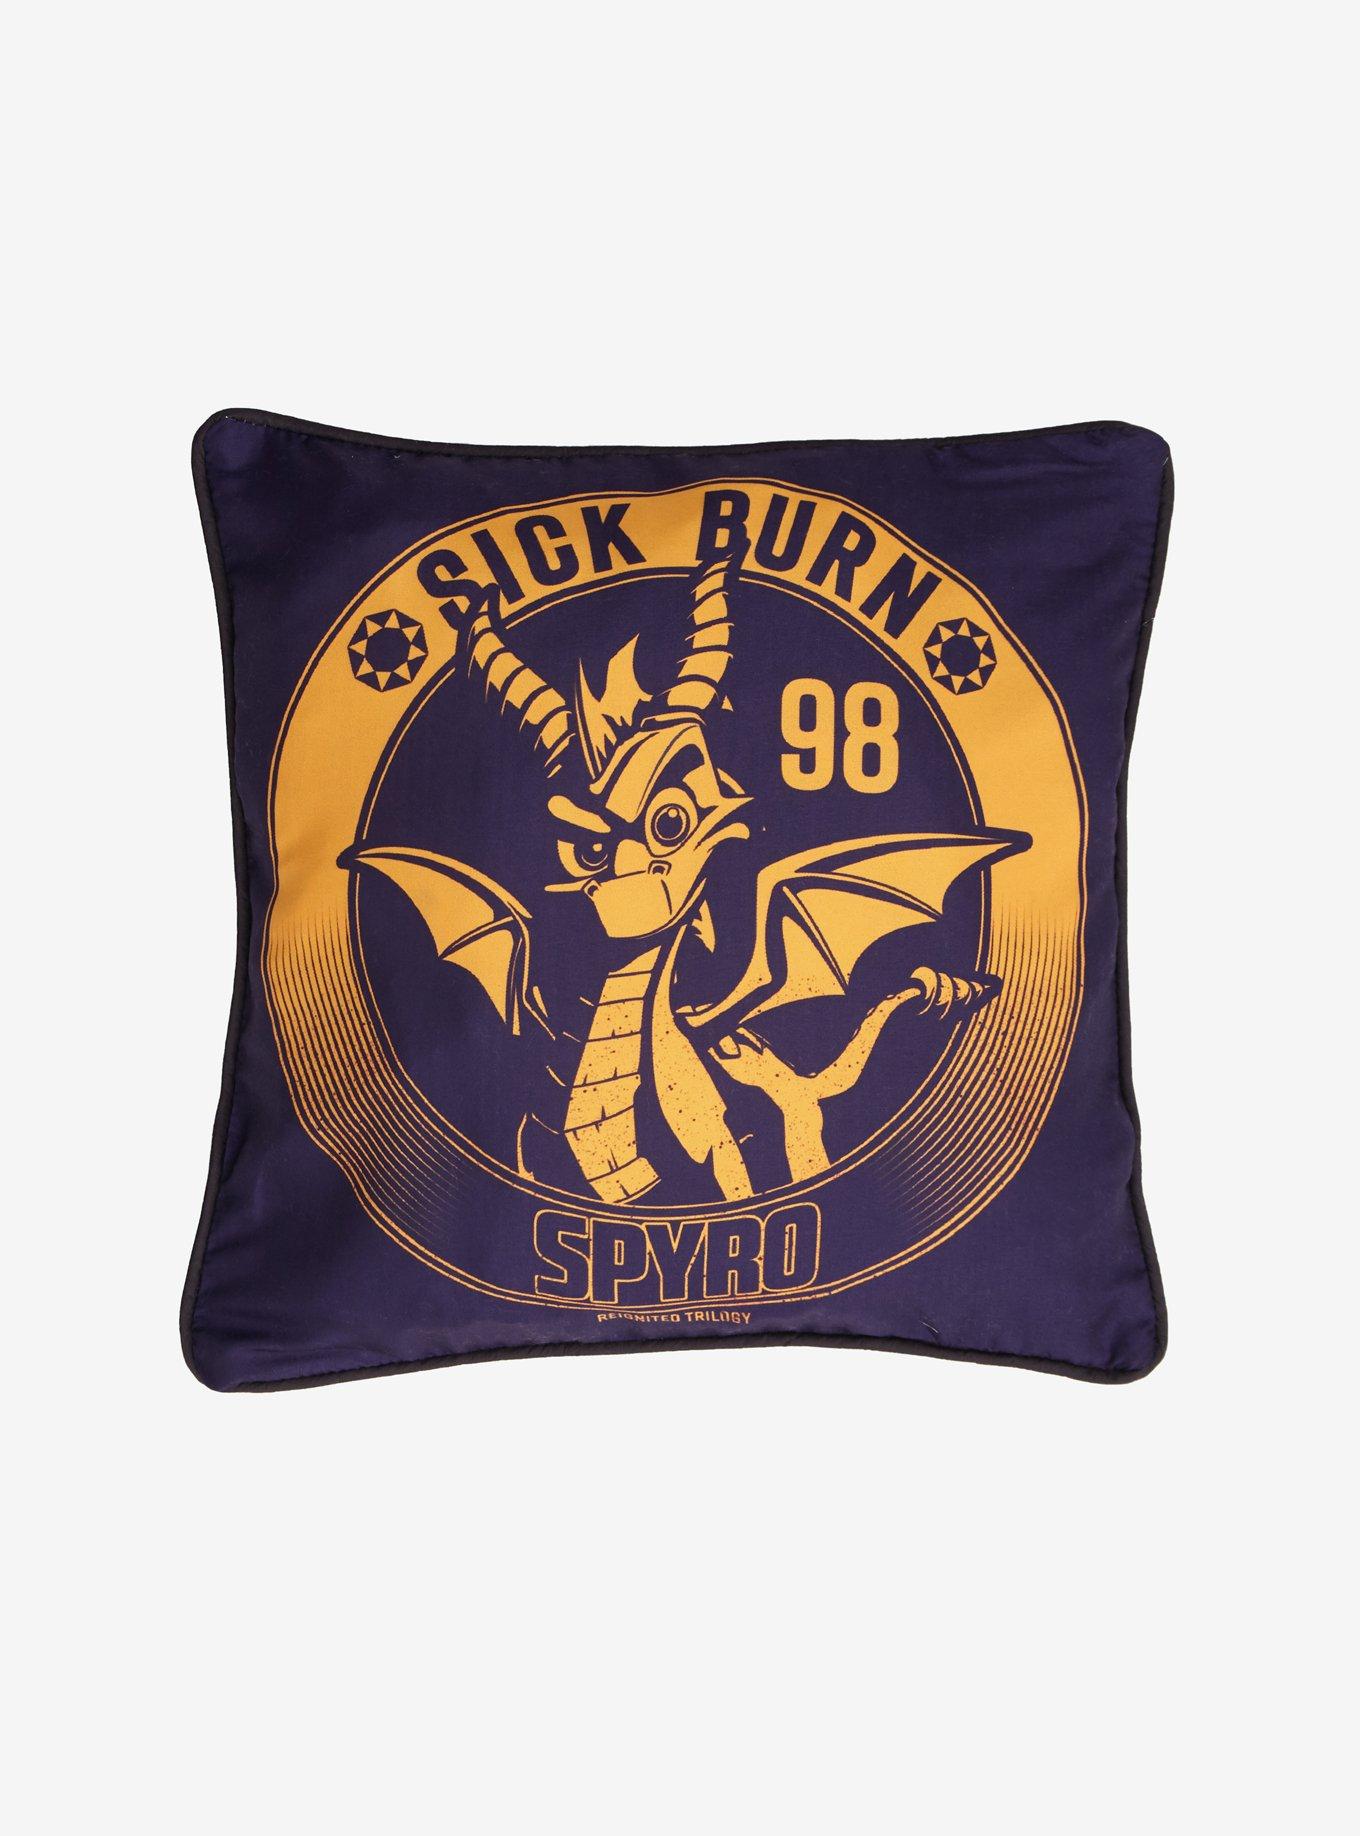 Spyro Sick Burn Pillow Cover, , hi-res